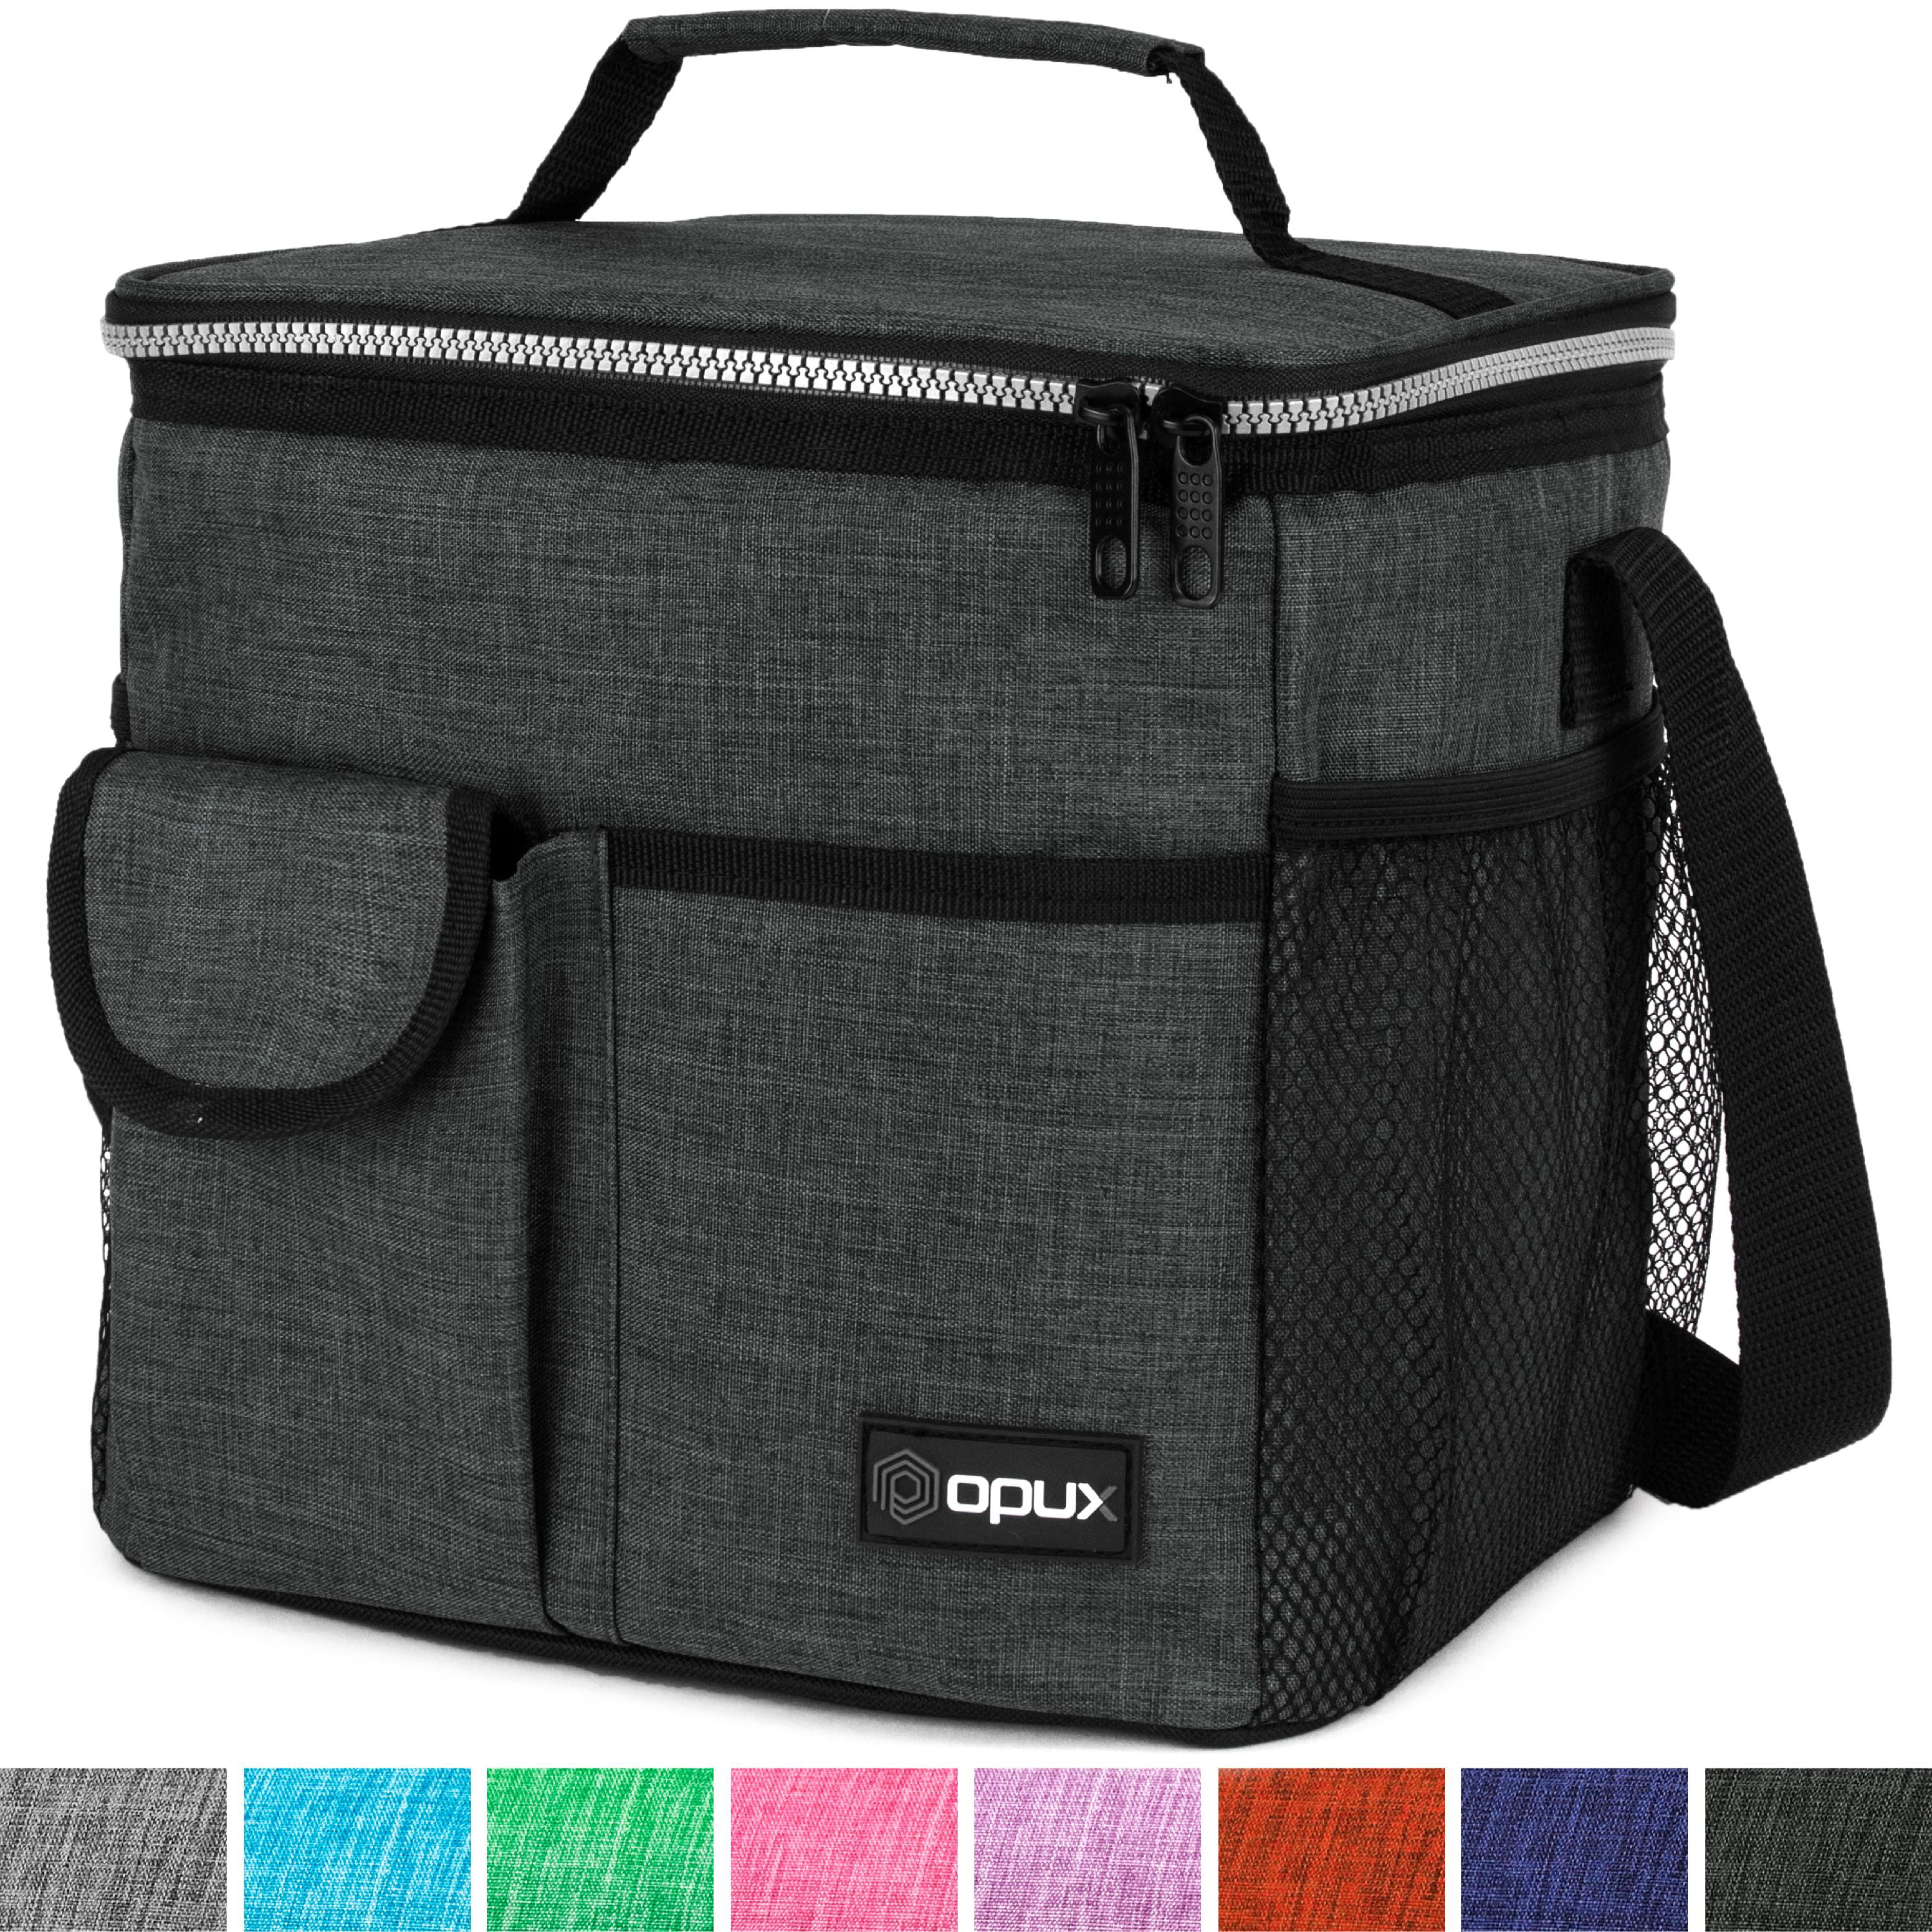 Insulated lunch Bag Coolers 12 can adjustable shoulder strap slip mesh pocket 